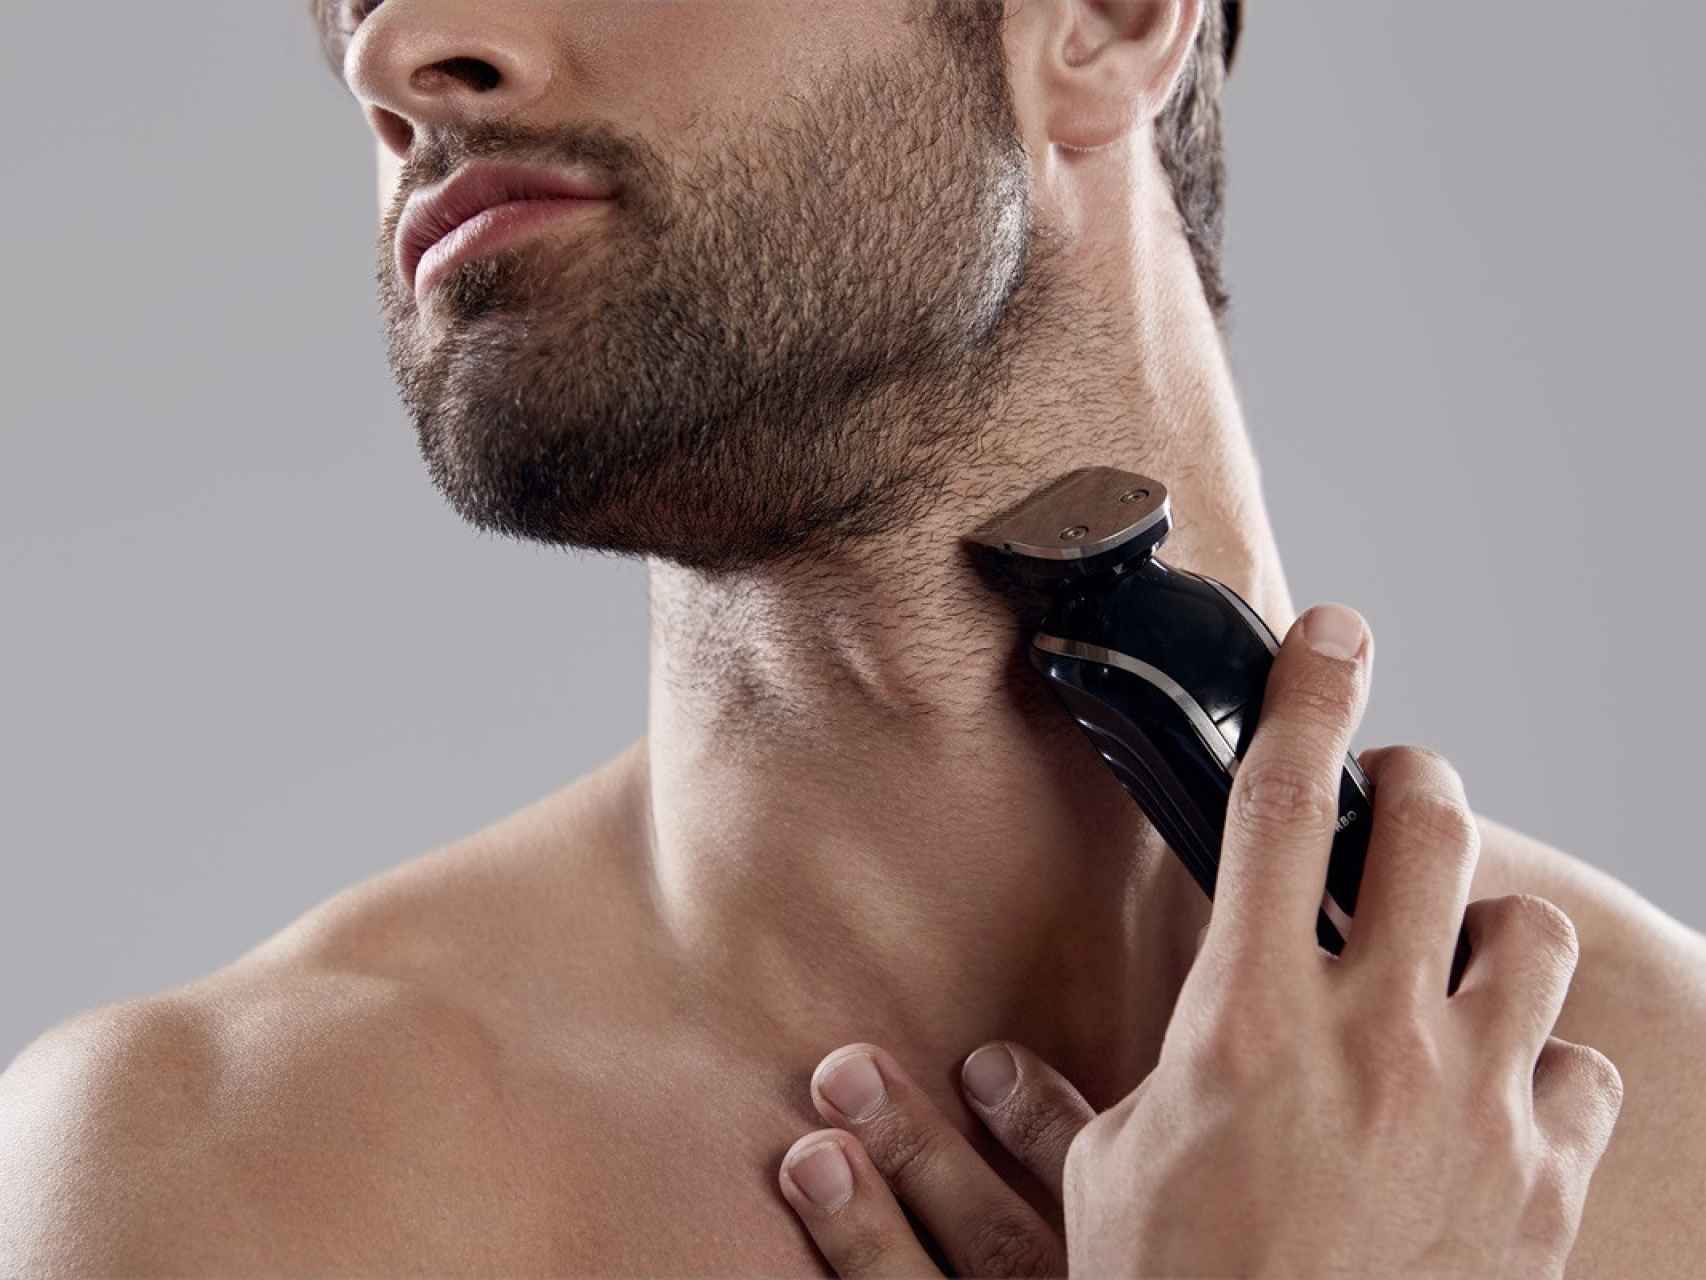 Maquinilla de afeitar Philips OneBlade Pro 360 para cara y cuerpo recorta,  perfila y afeita